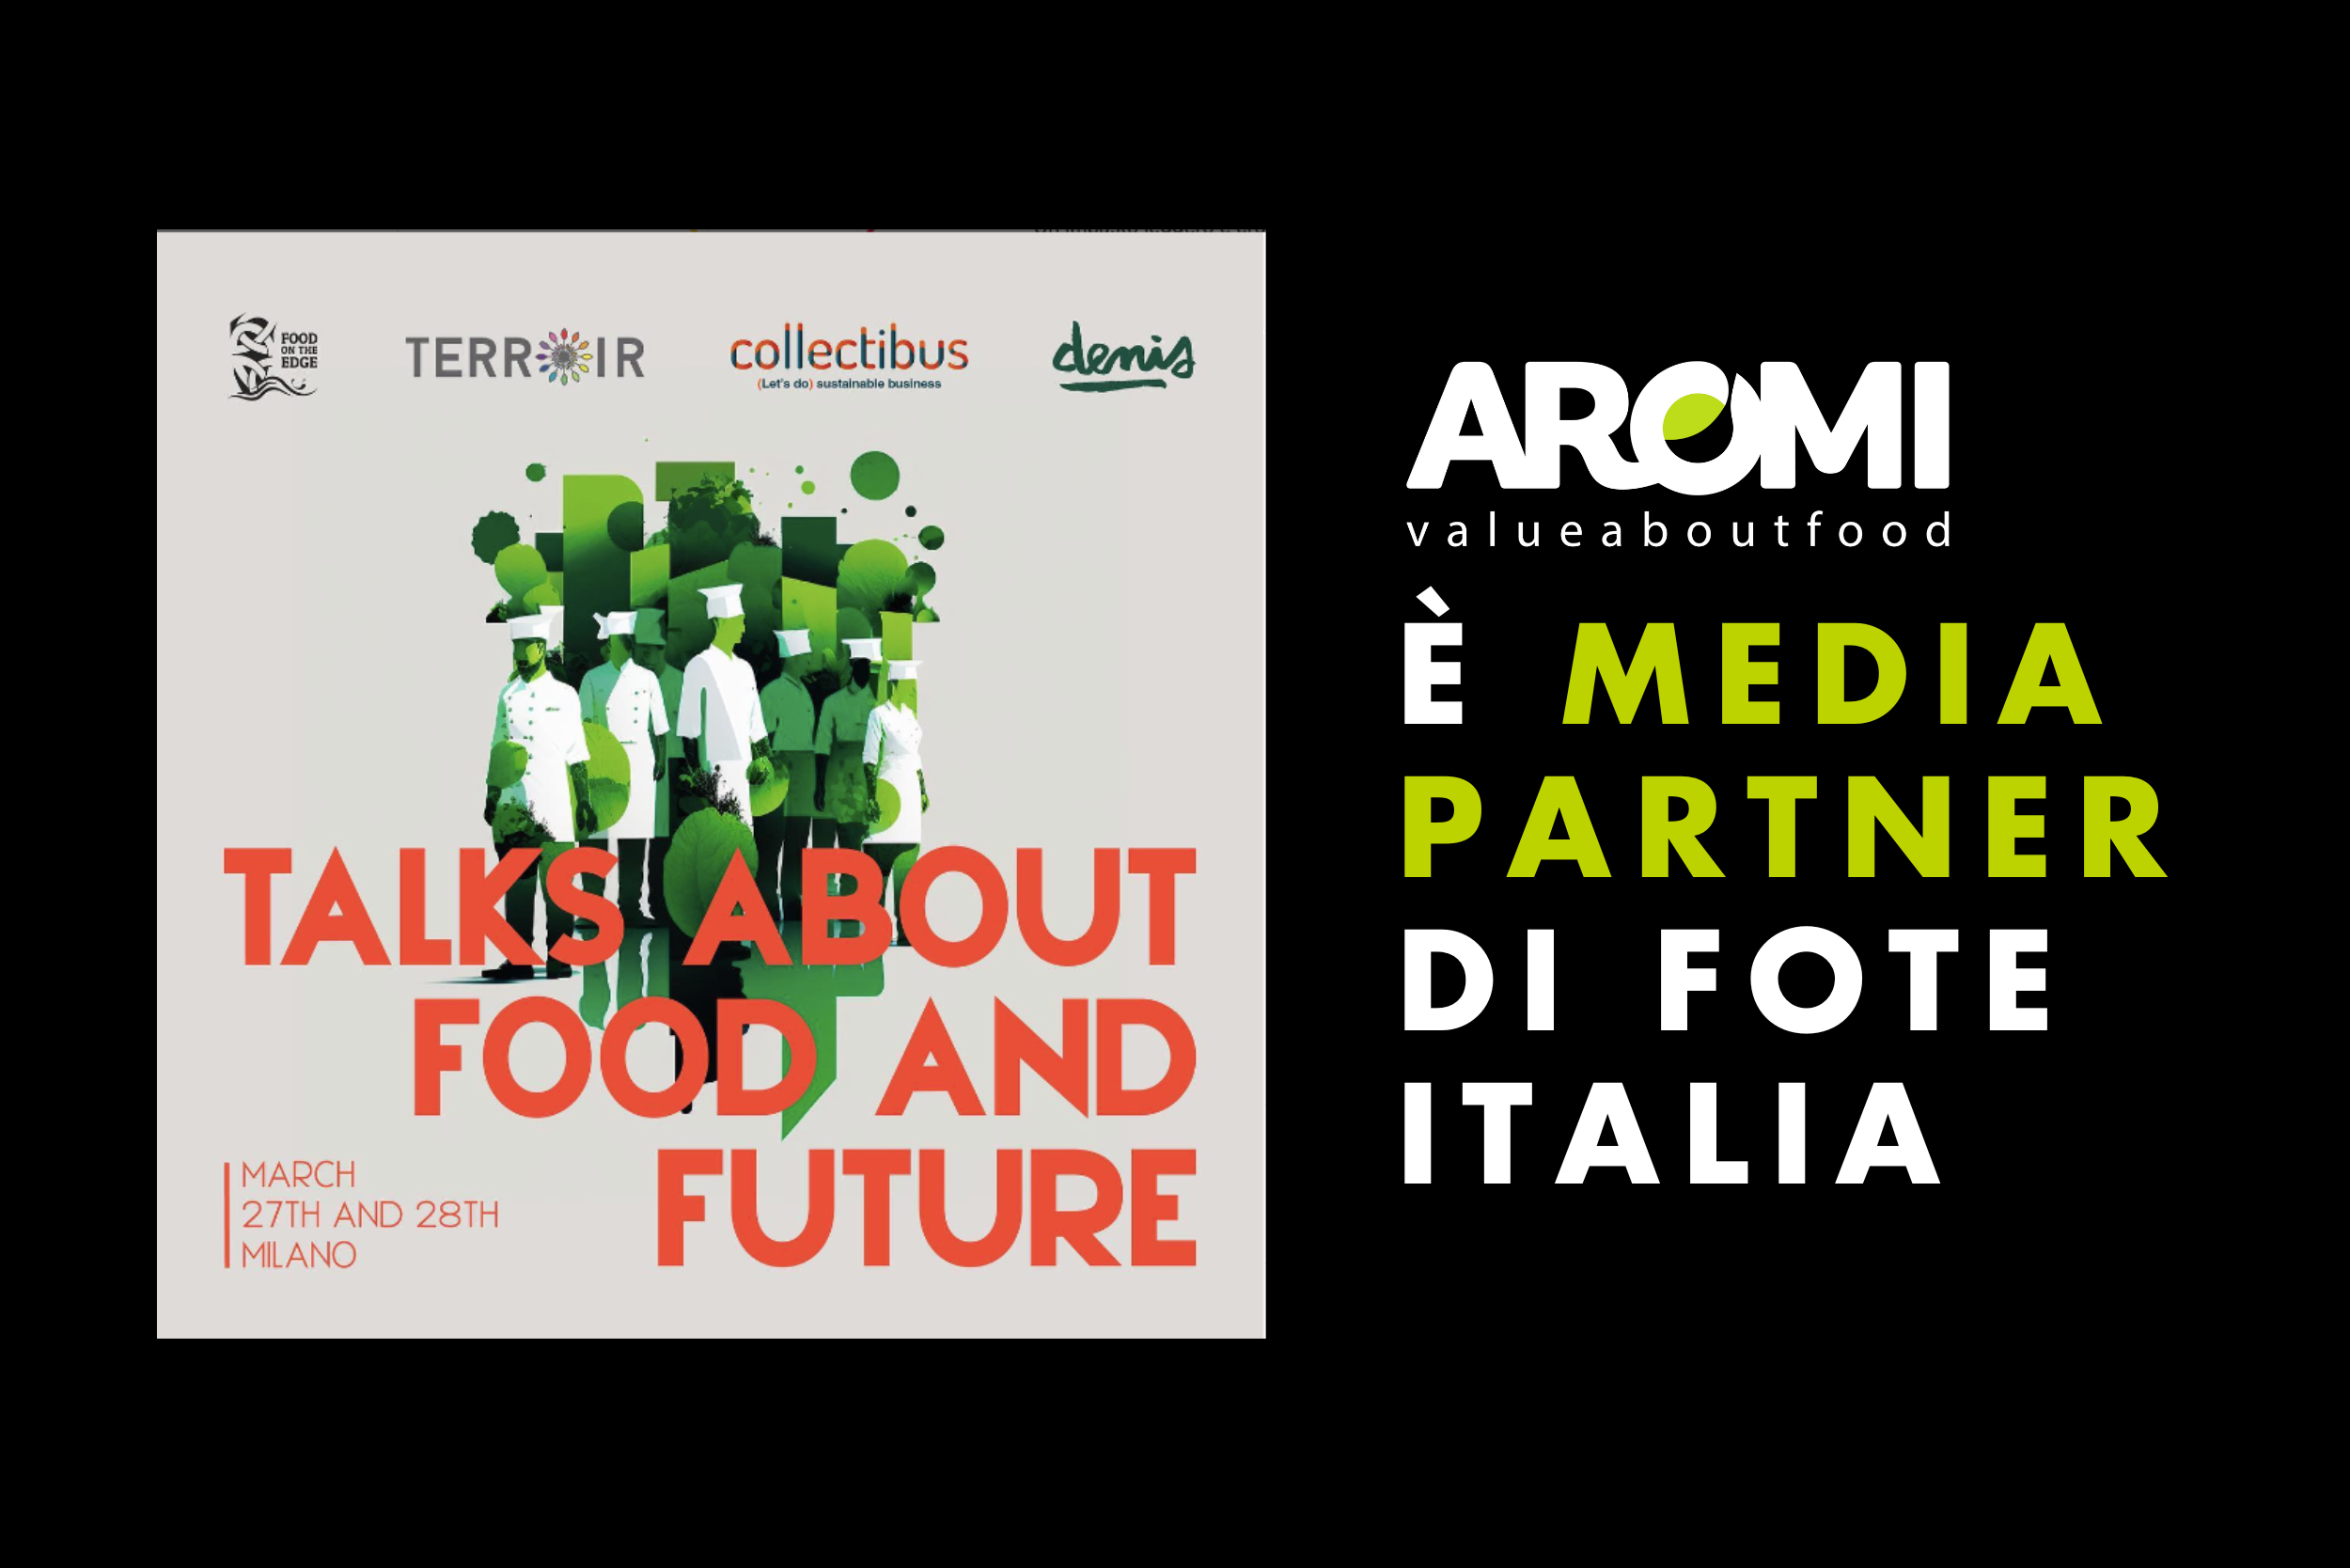 Siamo Media Partner dell’edizione italiana di FOOD ON THE EDGE